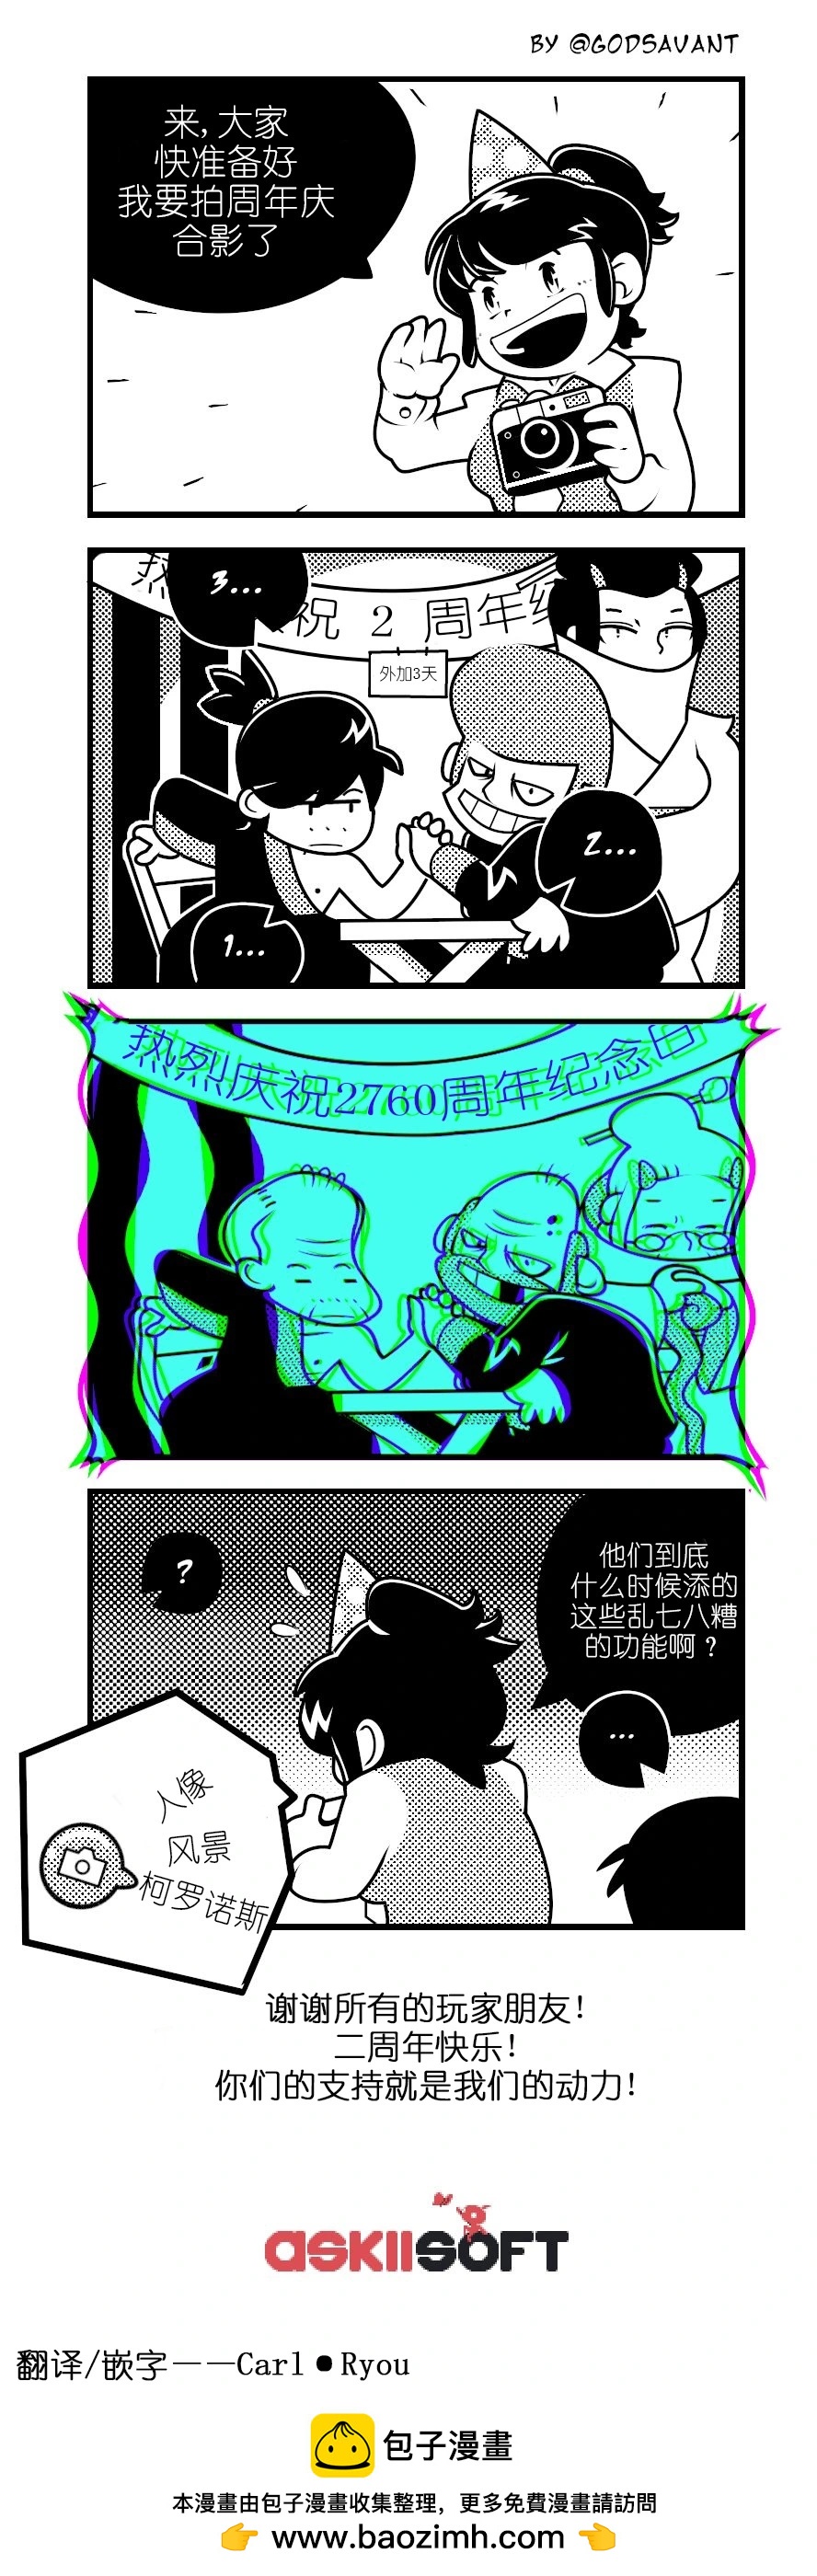 武士零官方漫畫 - 二週年 - 1